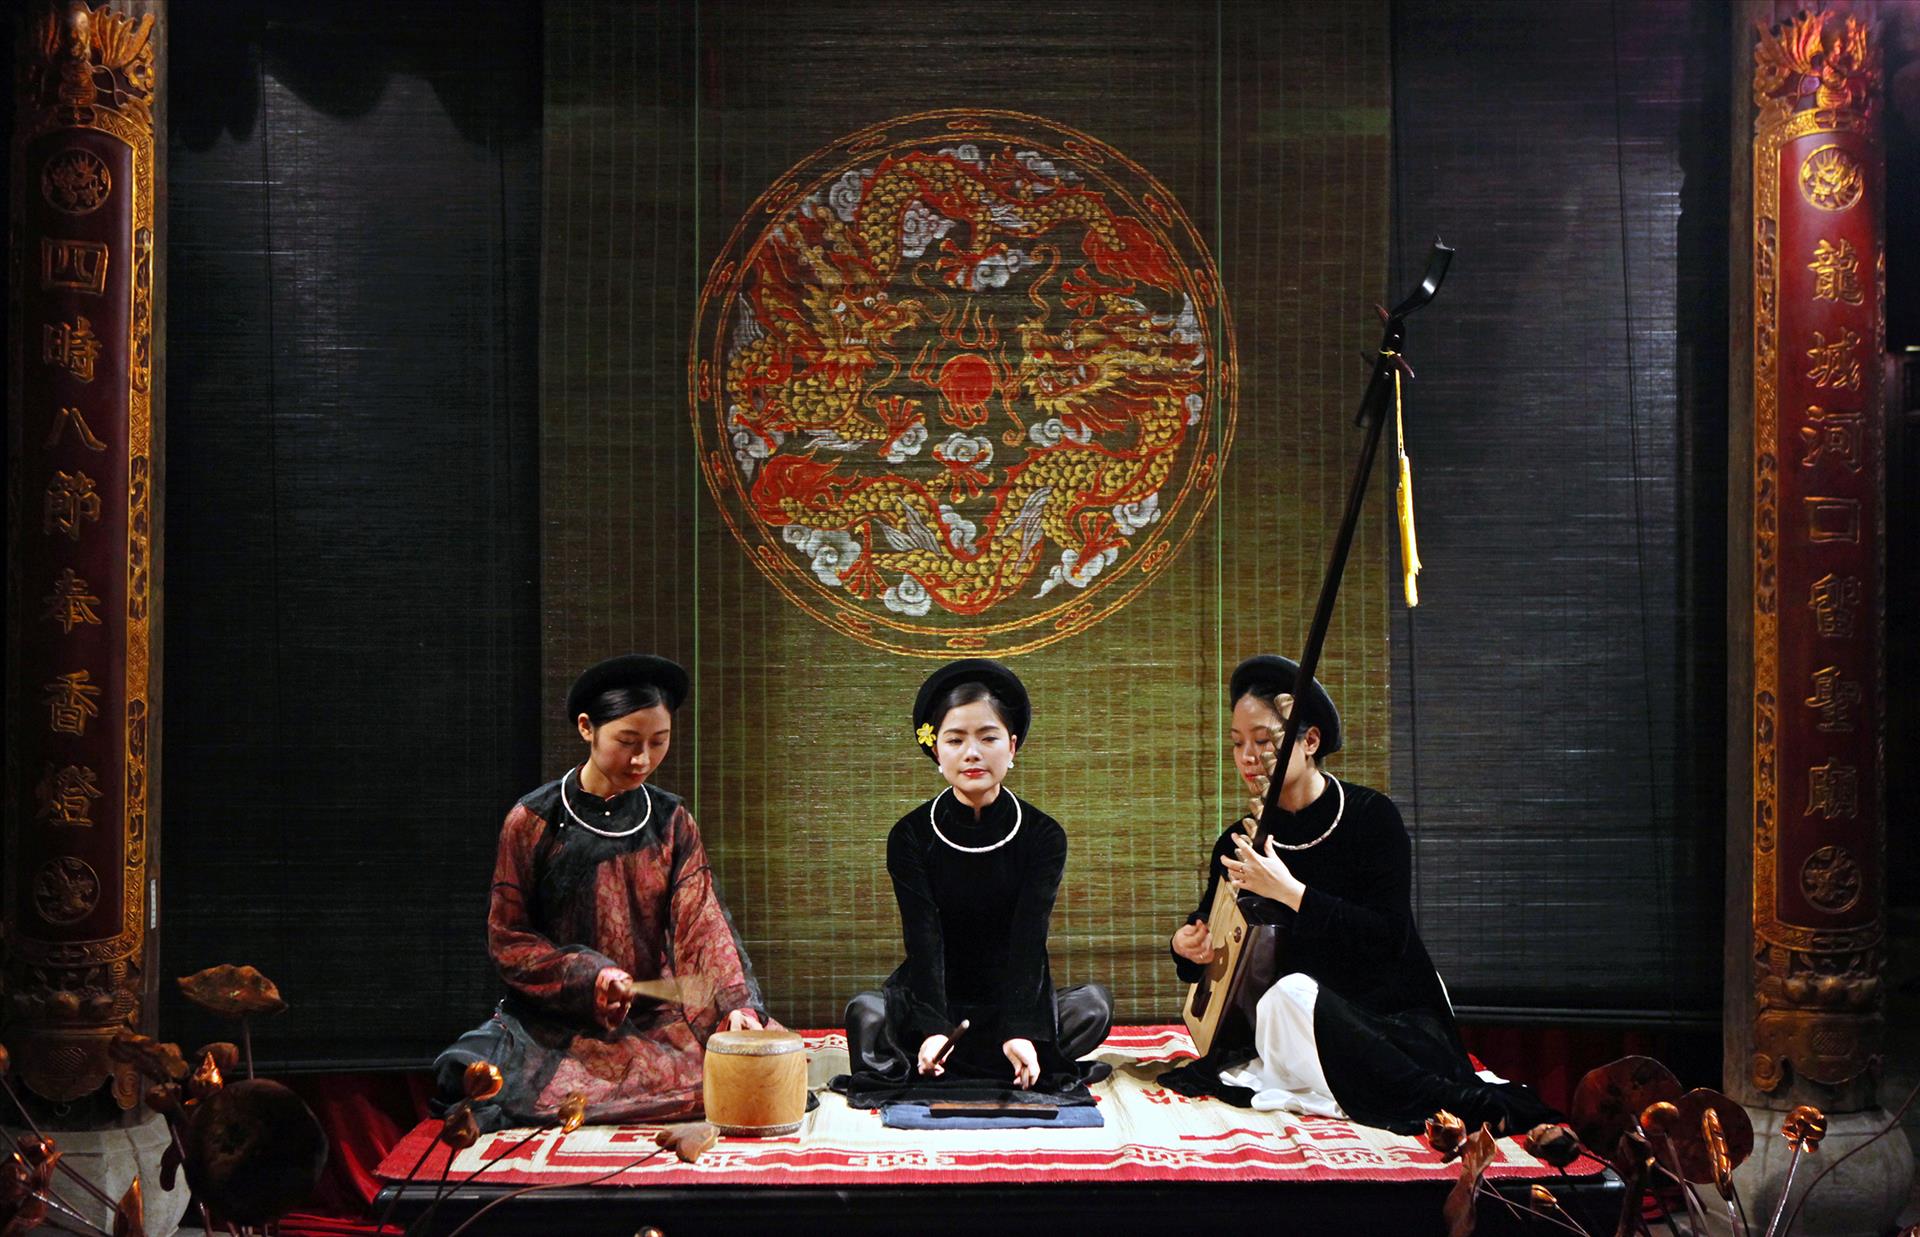 Ca trù có vị trí đặc biệt trong kho tàng âm nhạc truyền thống Việt Nam.